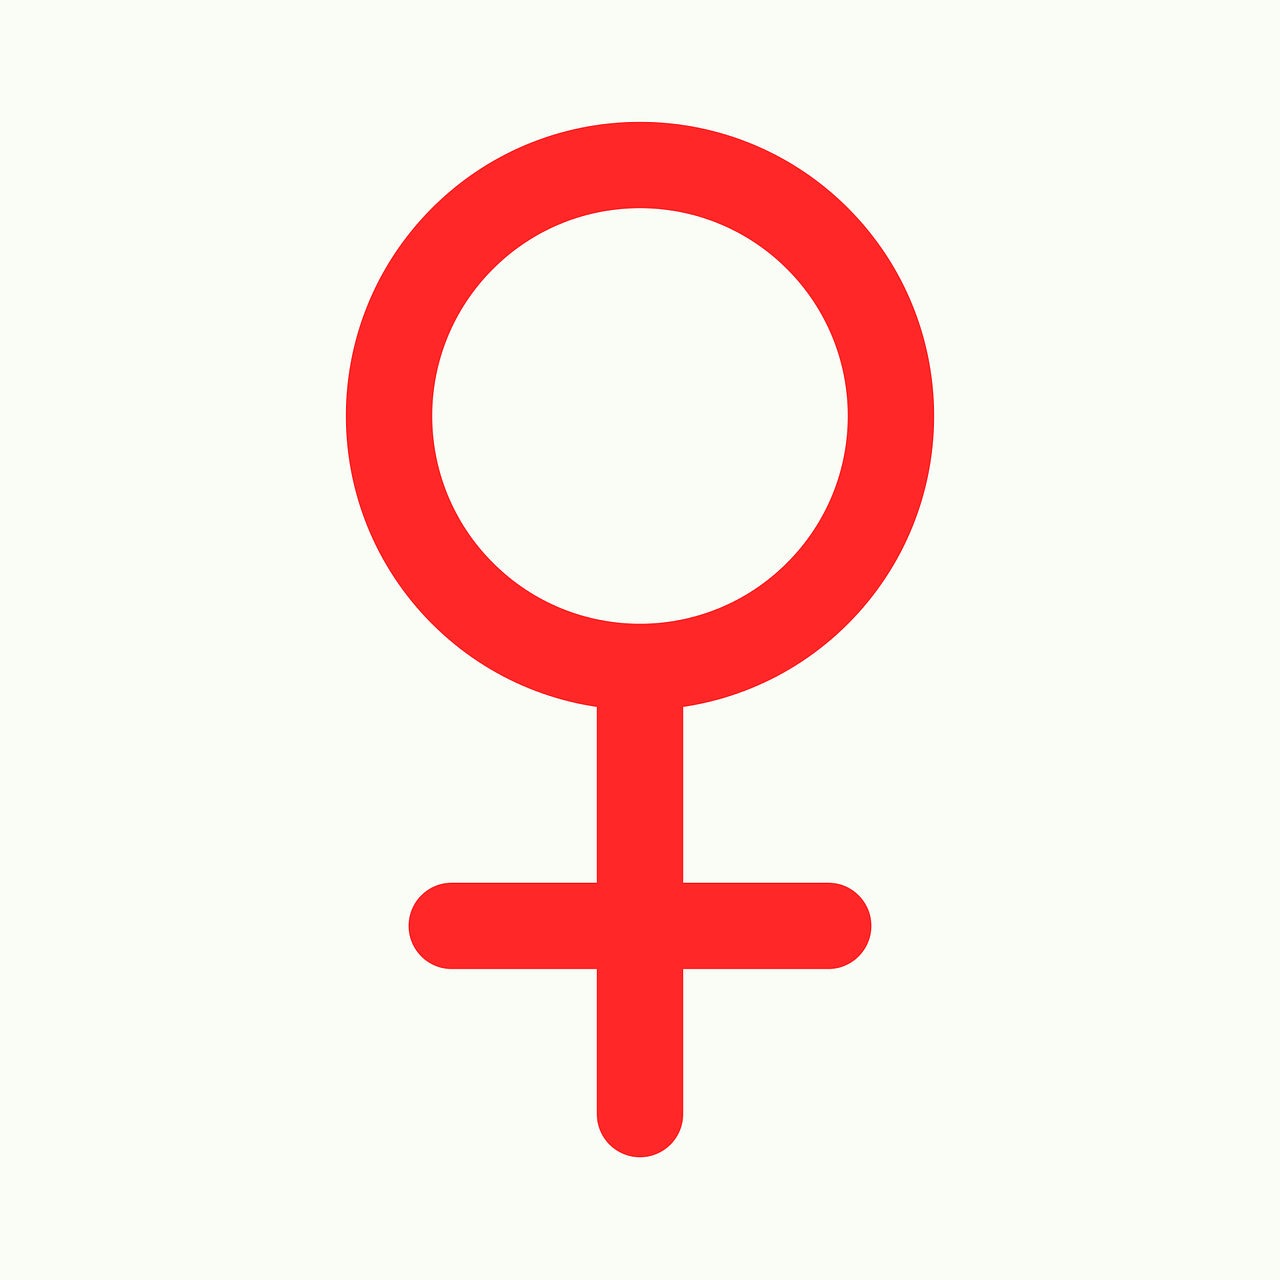 Зеркало Венеры символ. Знак женщины. Женский символ. Женский пол знак. Знак пон